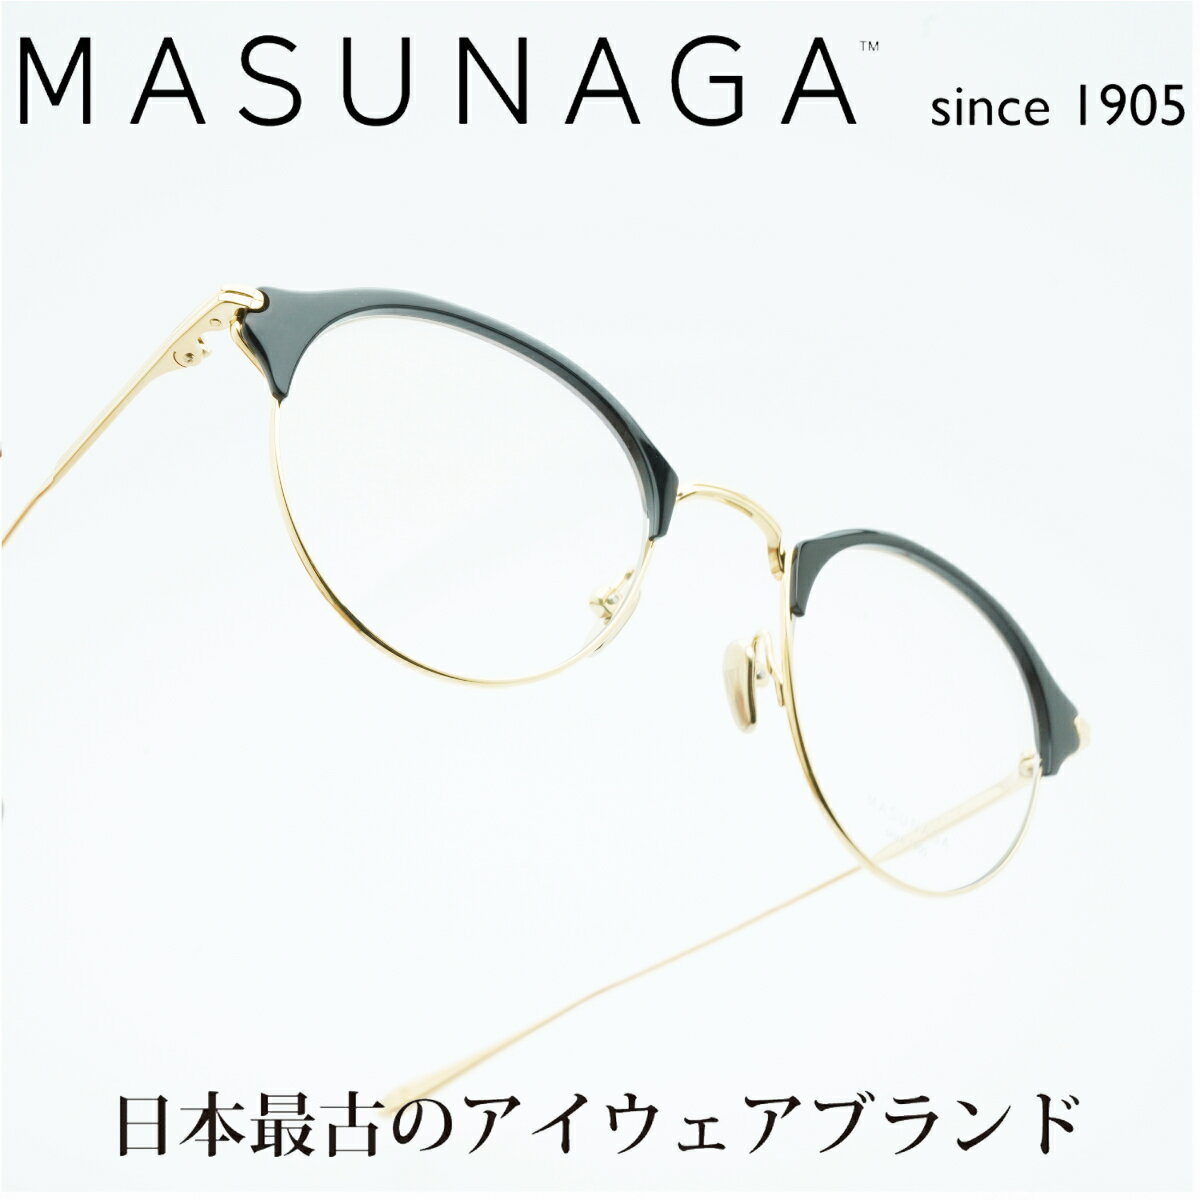 MASUNAGA since 1905GRACE col-49 BK/GP